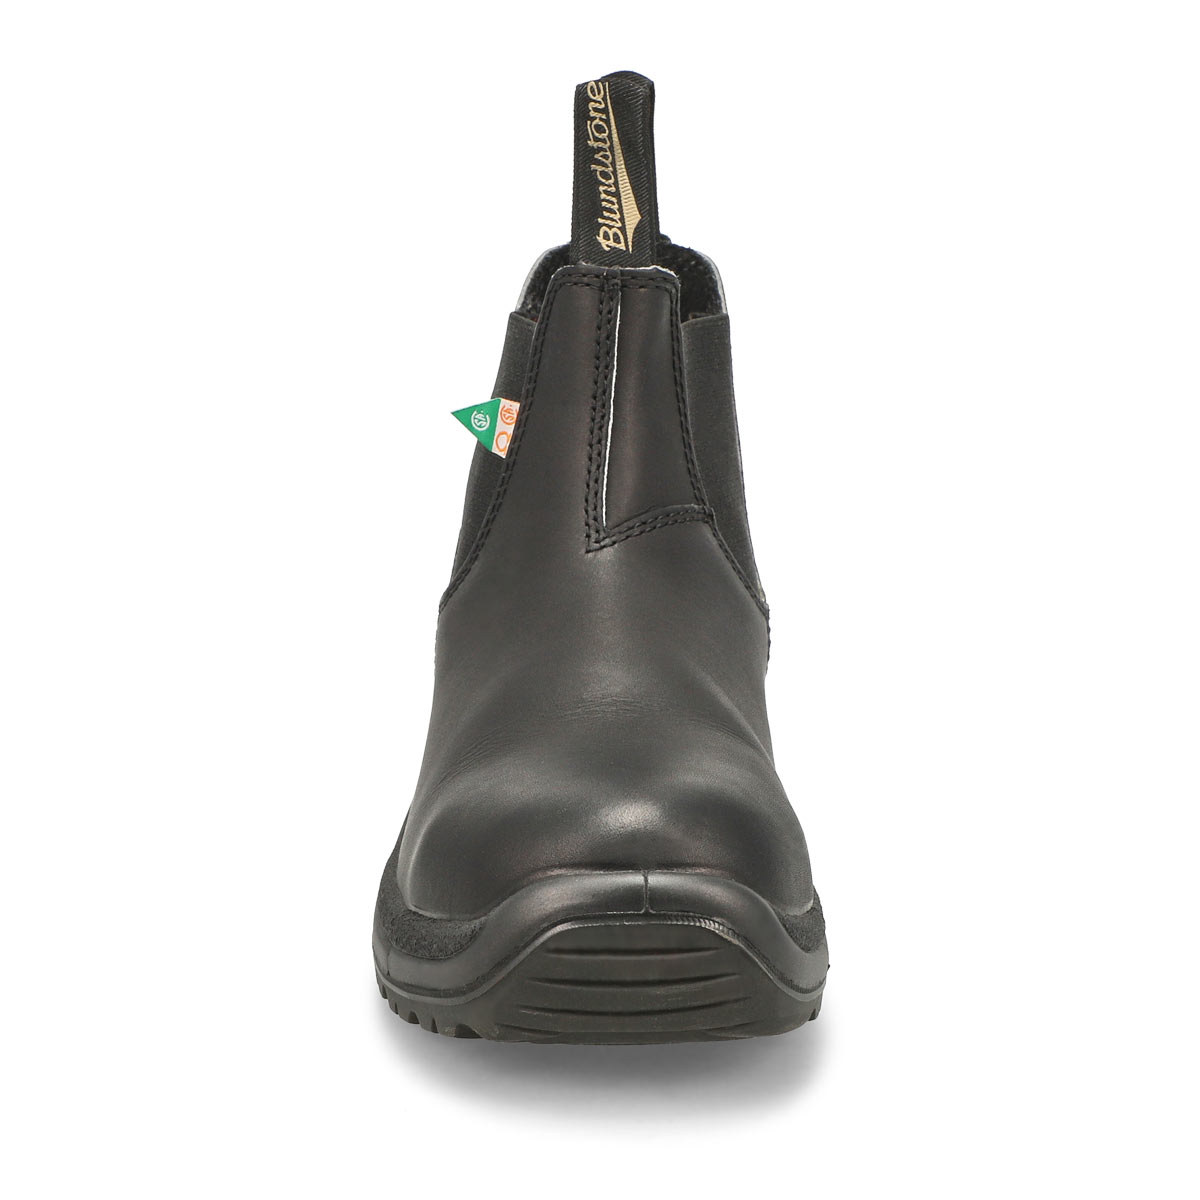 Unisex 163 - Work & Safety Boot - Black